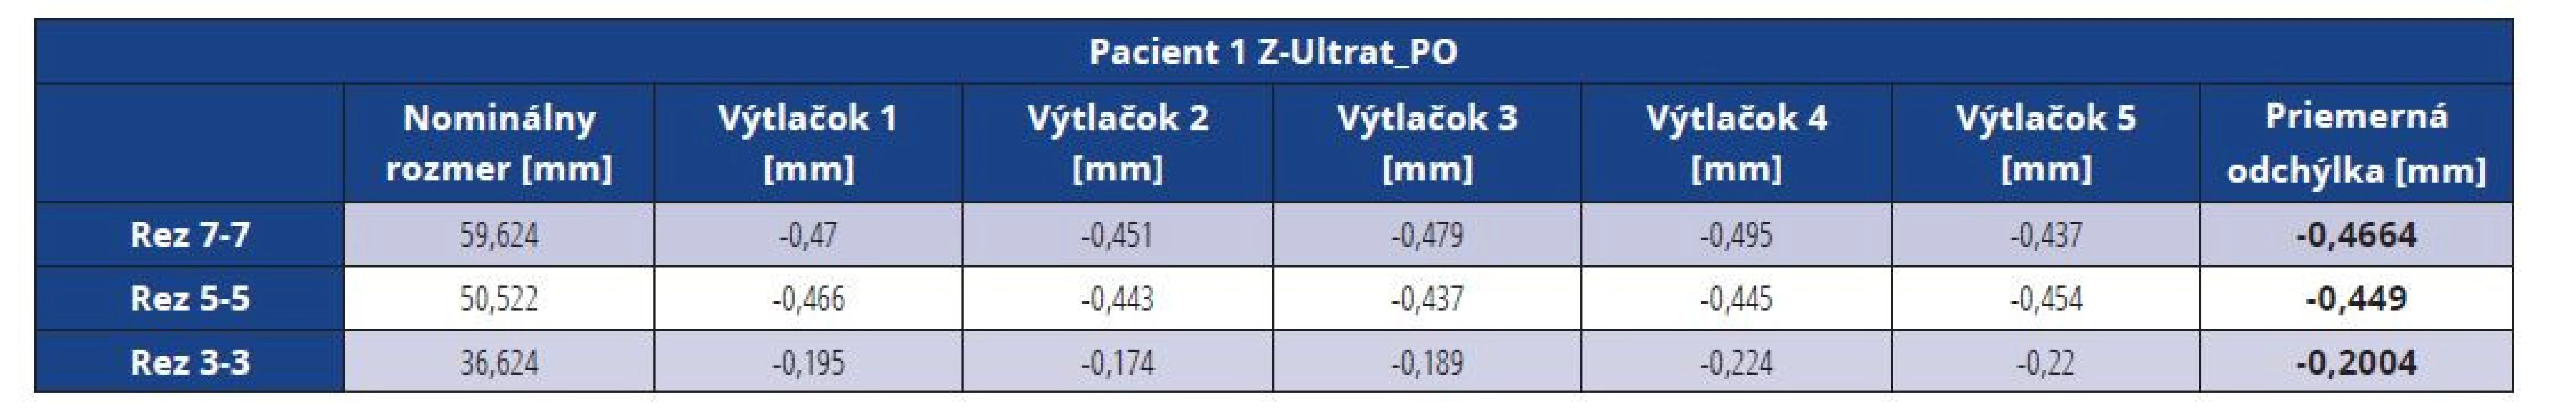 Rozmerové odchýlky master modelu pacienta 1 vytlačeného z materiálu Z-Ultrat po vákuovaní<br>
Tab. 6 Dimensional deviations of the Z-Ultrat master model after vacuuming (patient 1)